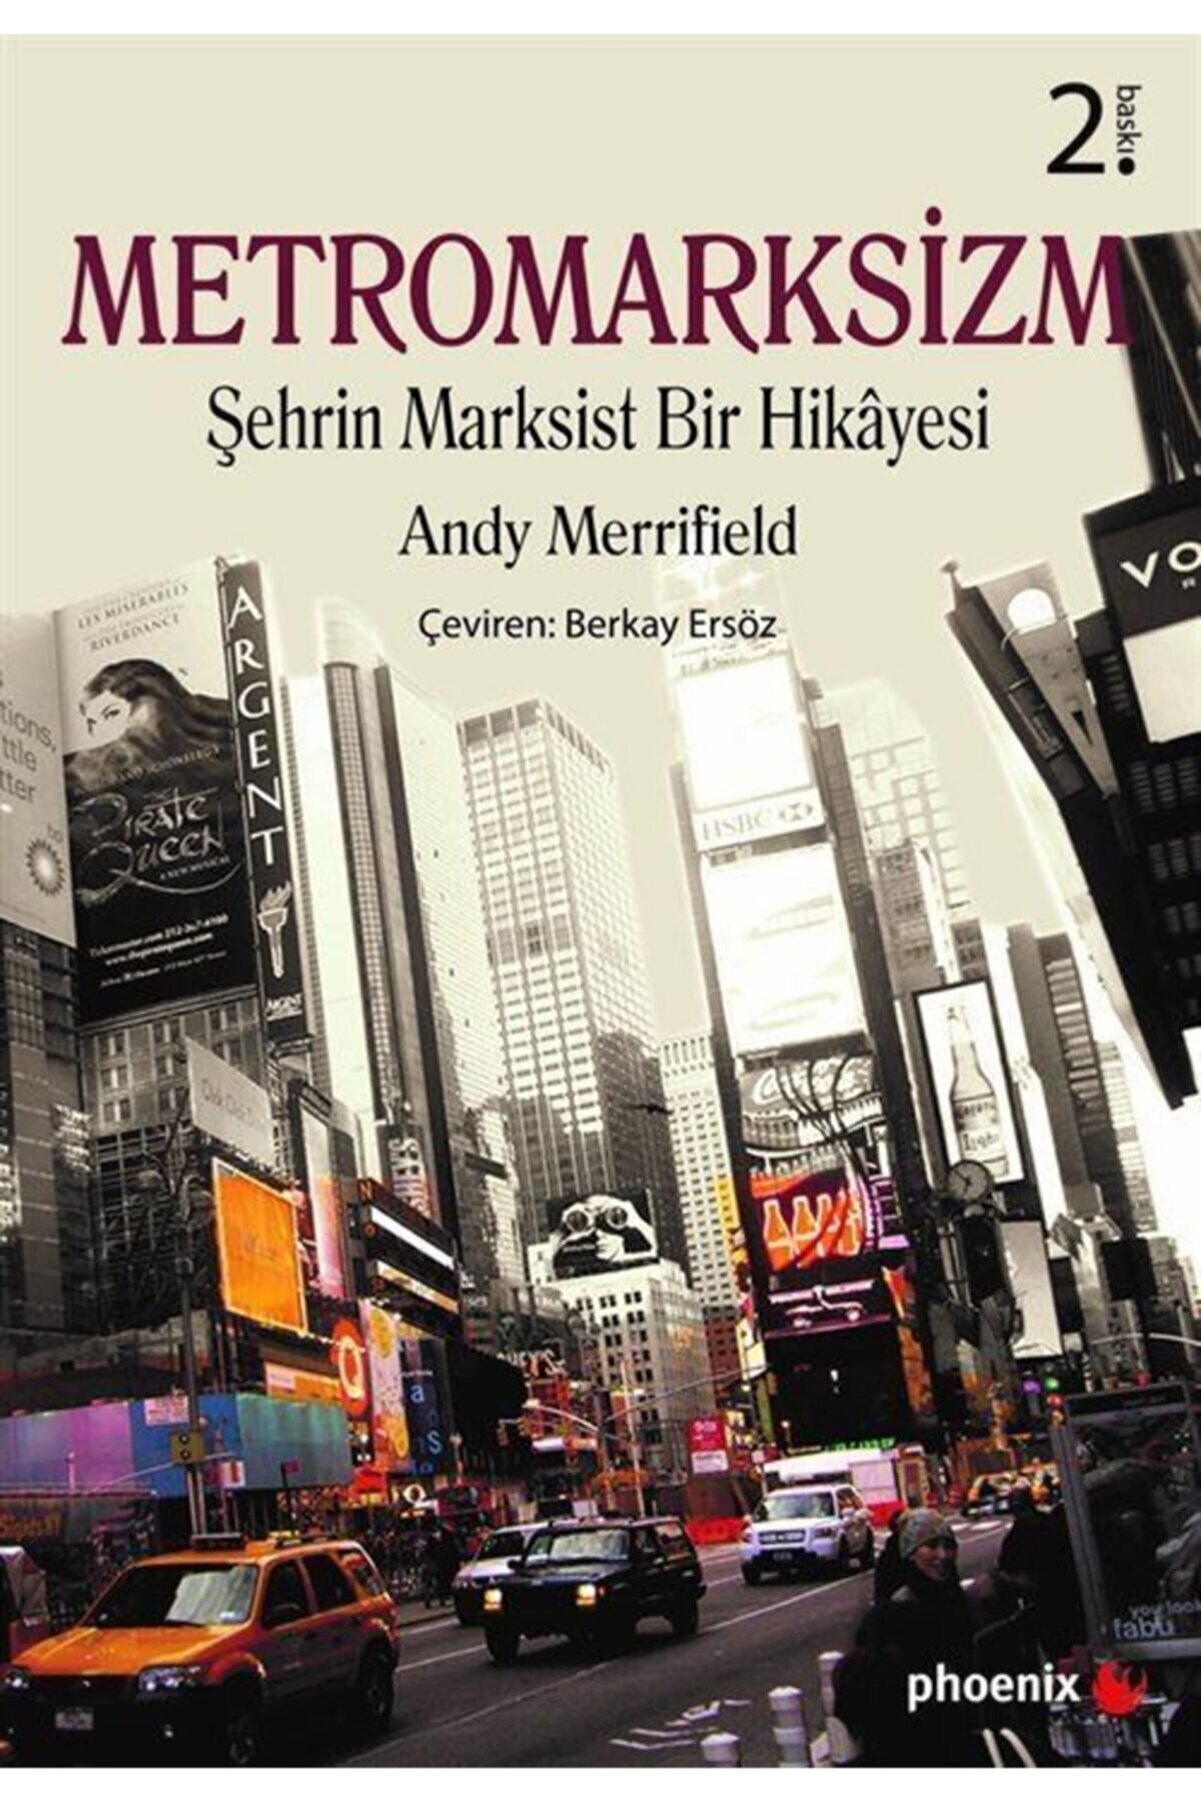 Phoenix Yayınevi Metromarksizm & Şehrin Marksist Bir Hikayesi